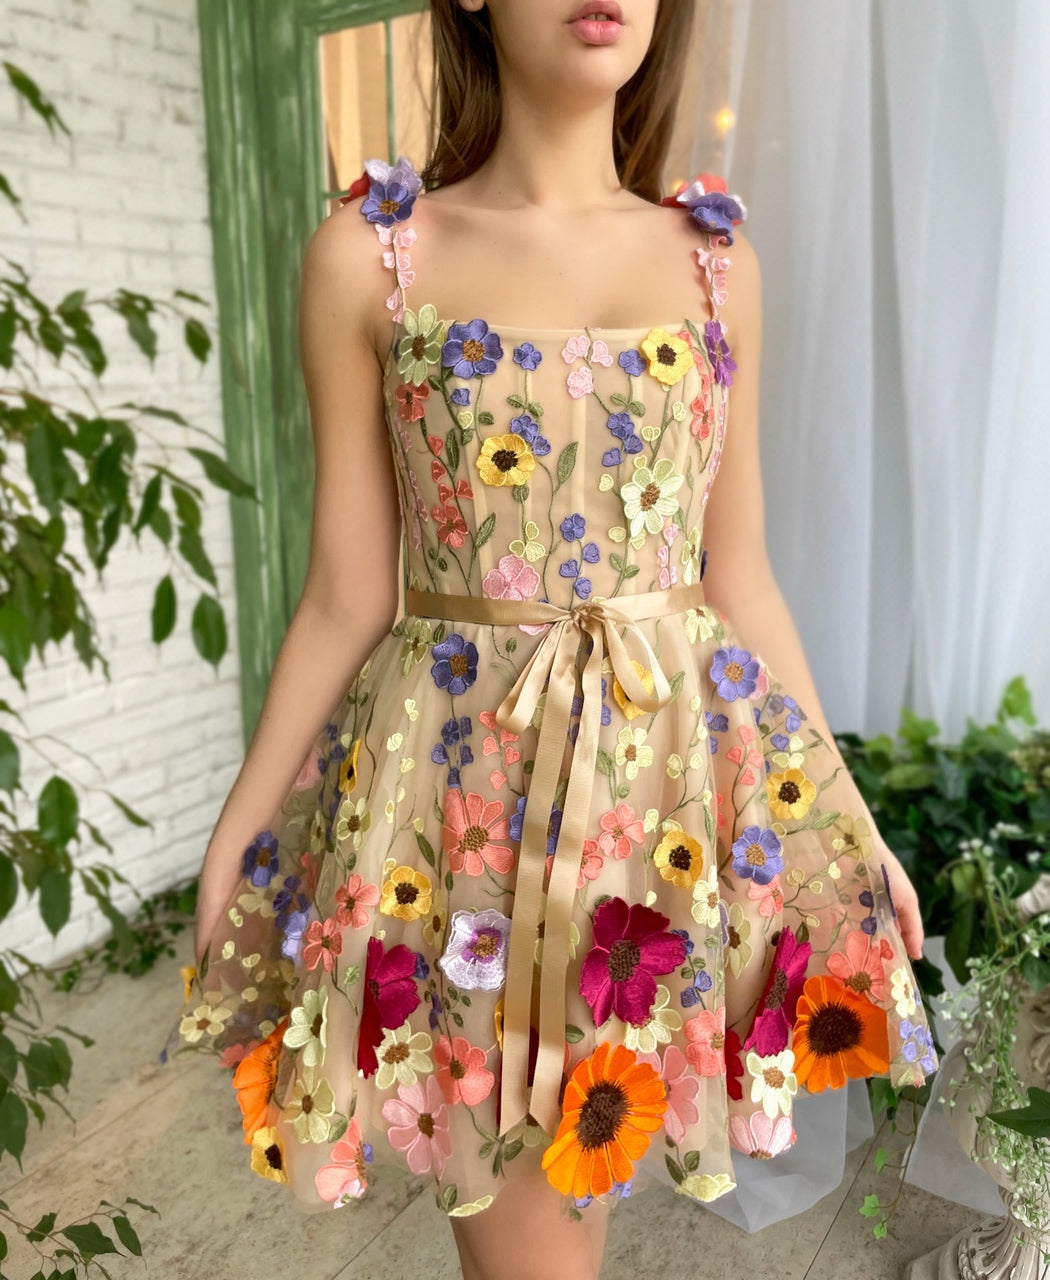 Floral Fantasia Dress, 42% OFF